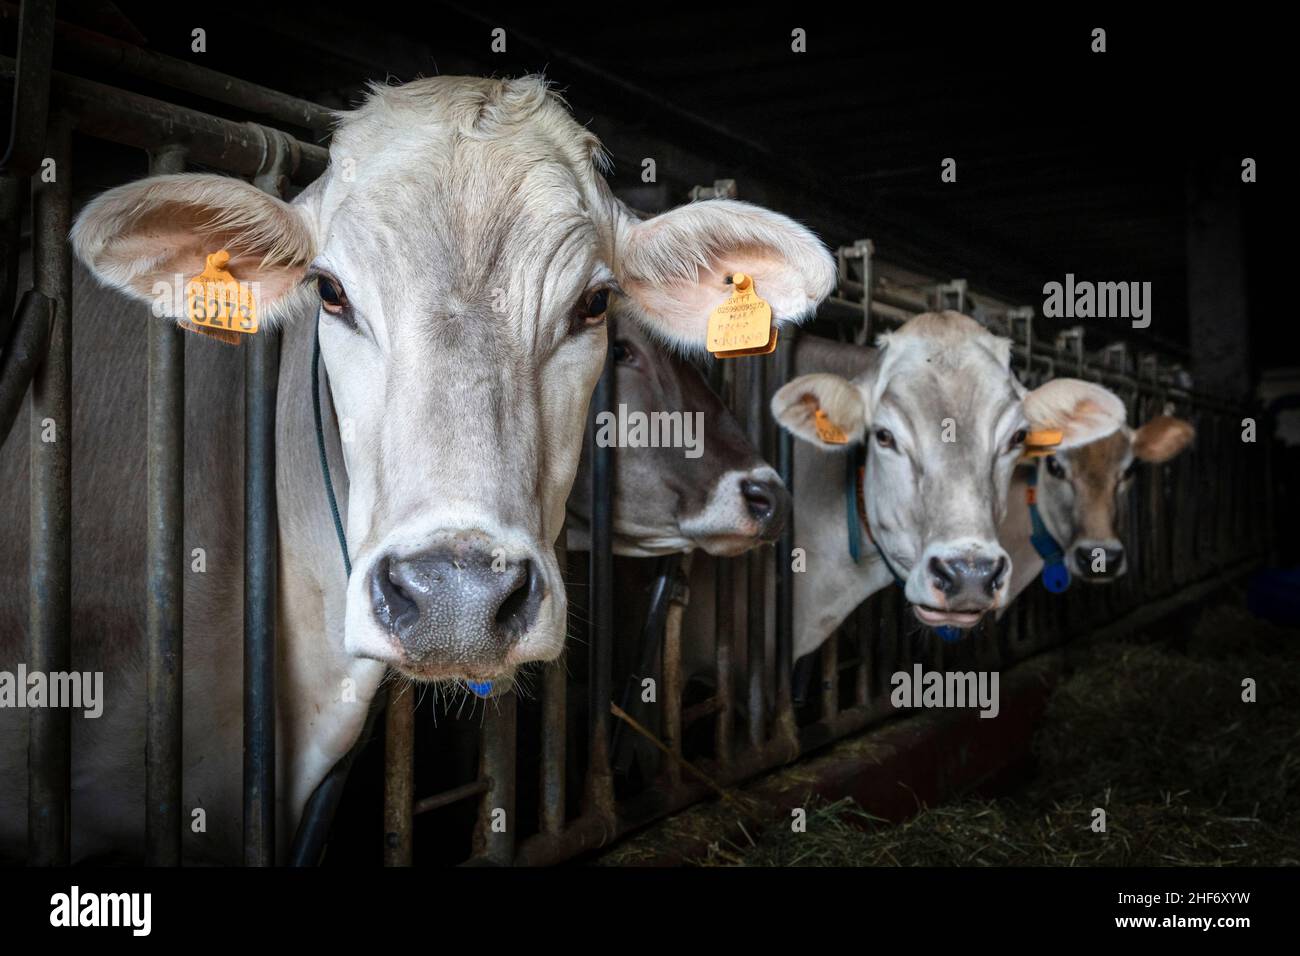 Italie, Vénétie, Belluno, Comelico Superiore, vaches laitières à l'intérieur d'une écurie moderne Banque D'Images